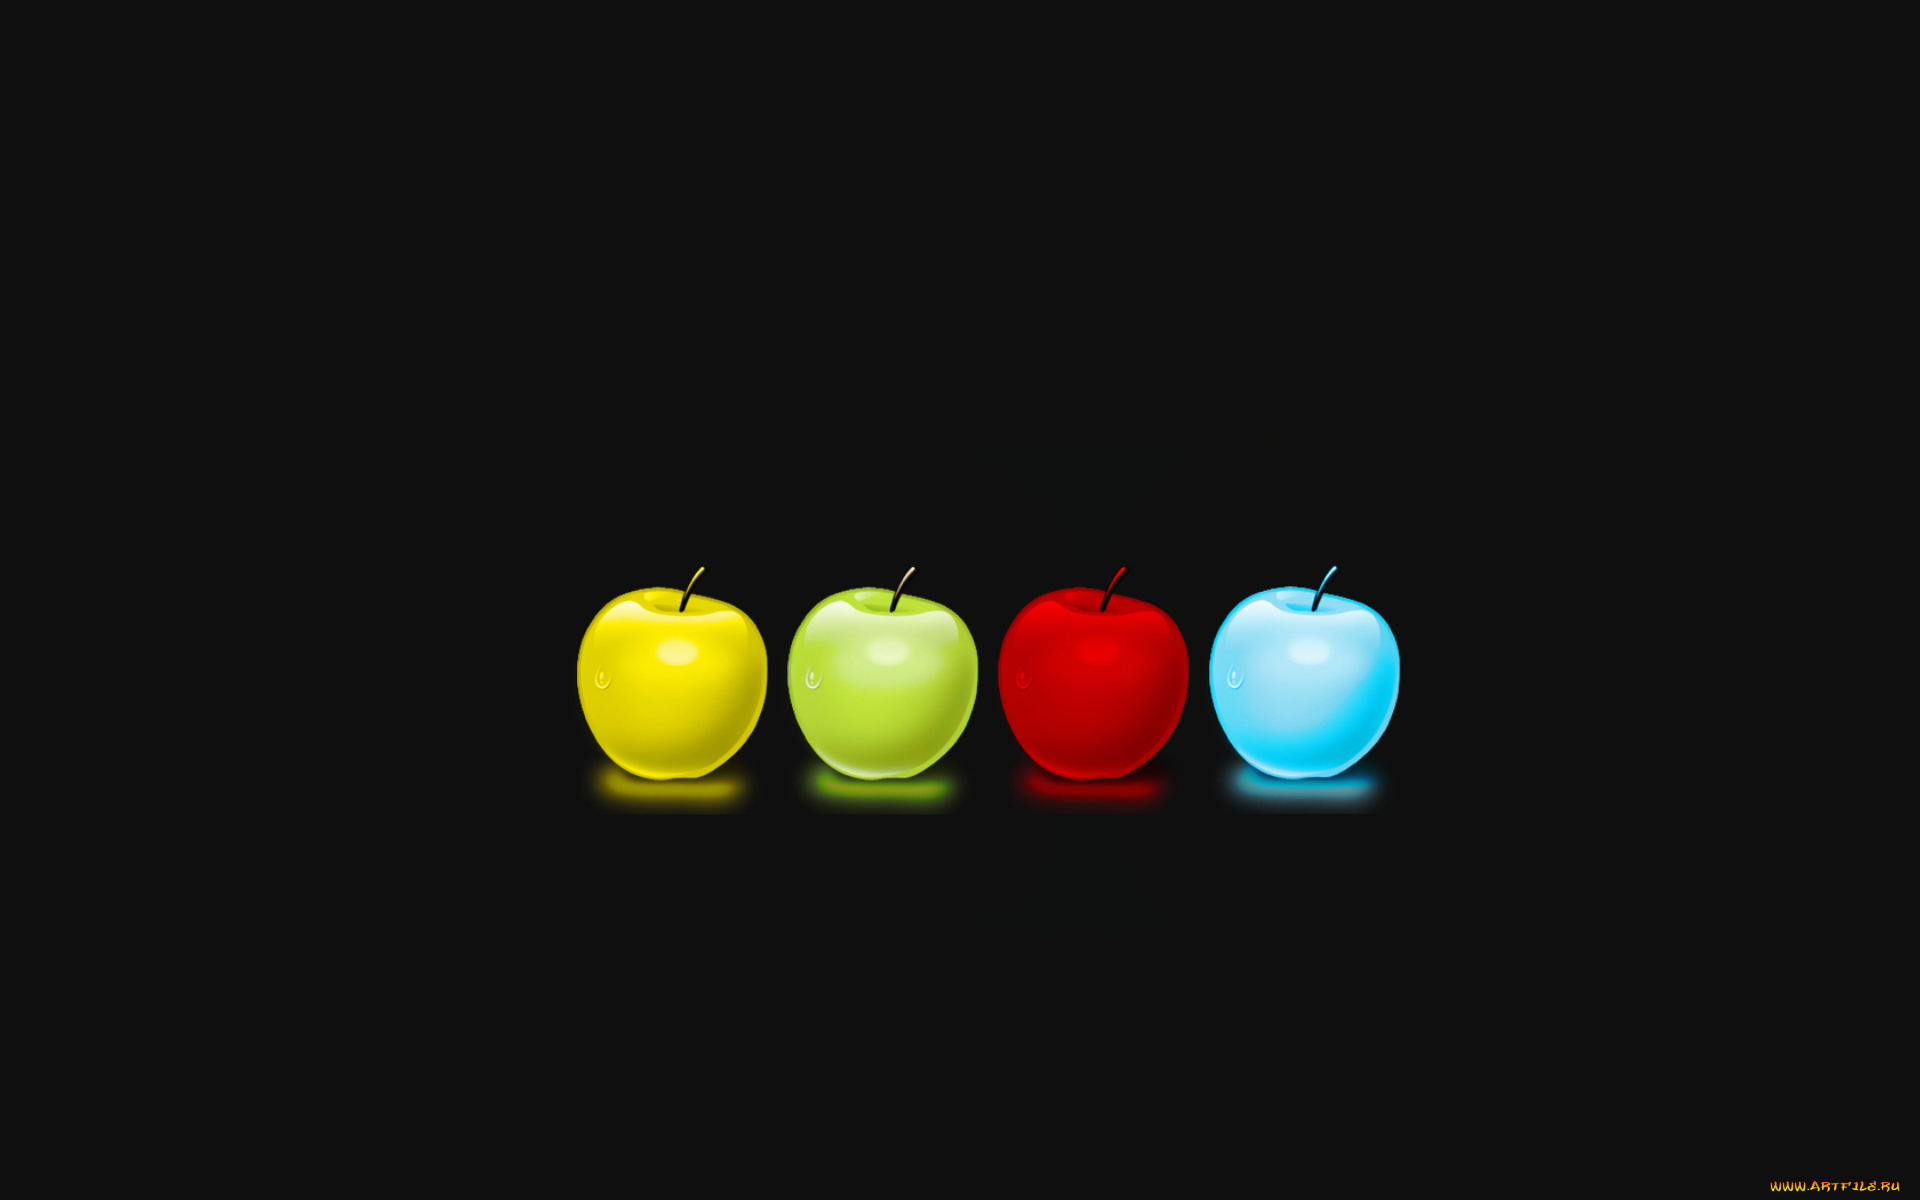 3д, графика, другое, фон, тёмный, цвета, капли, яблока